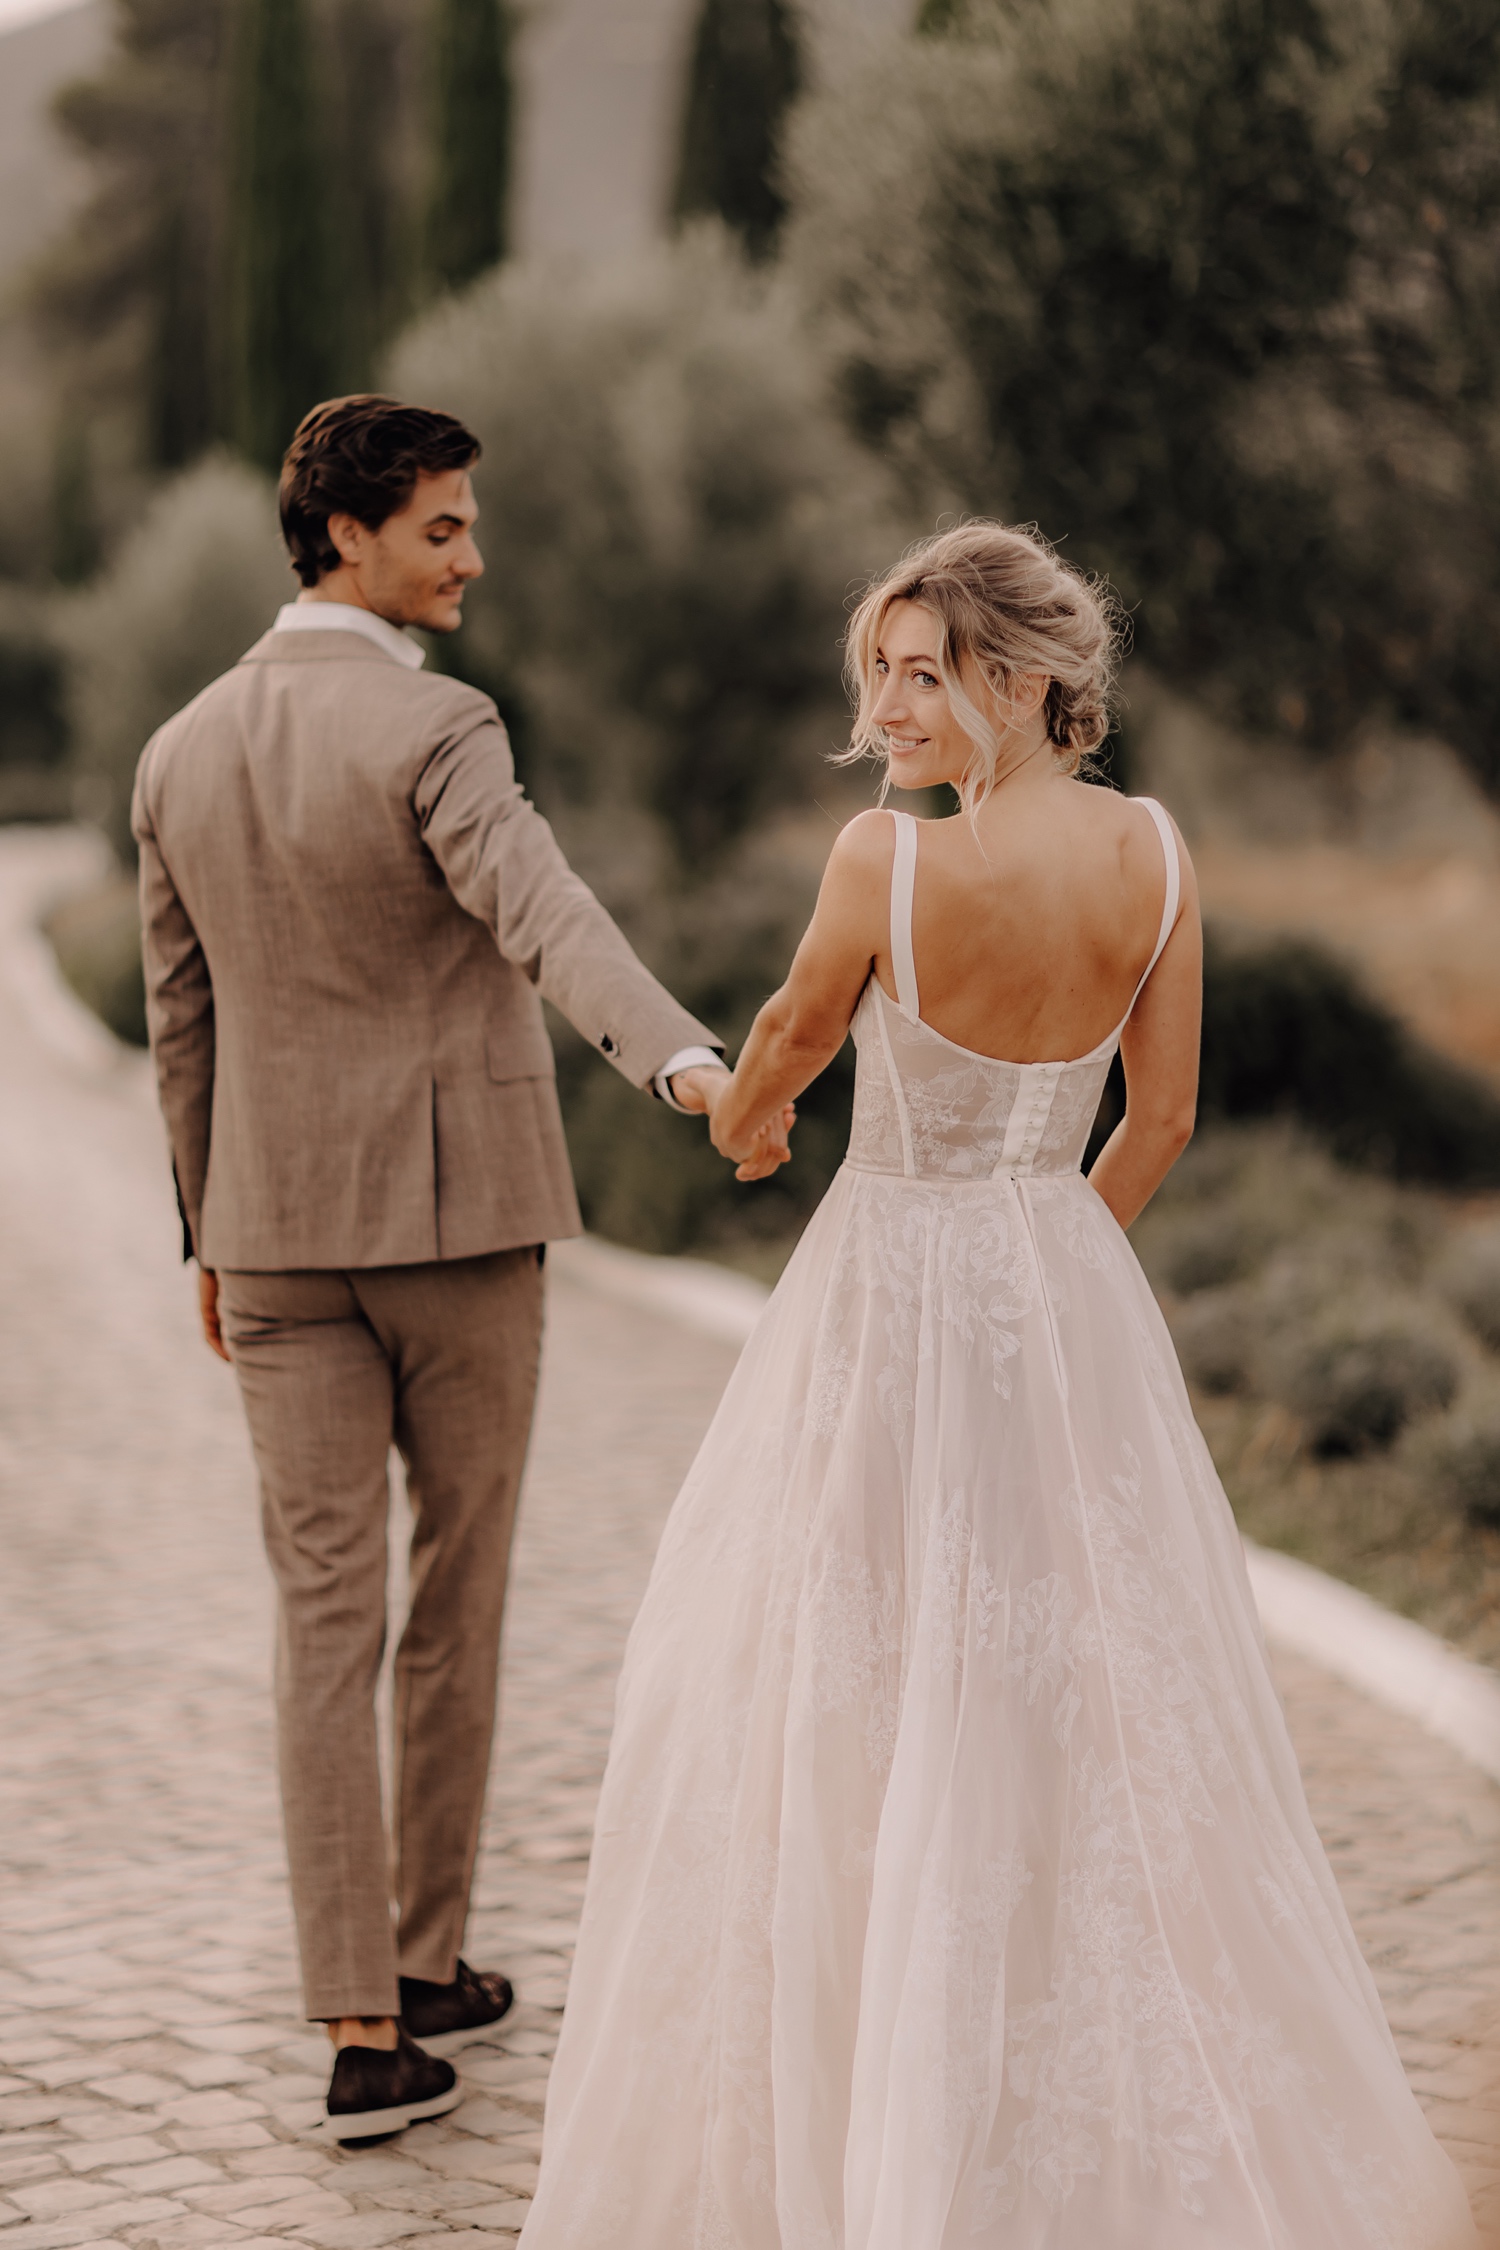 Huwelijksfotograaf buitenland - bruidspaar wandelt tussen de cipressen in Portugal